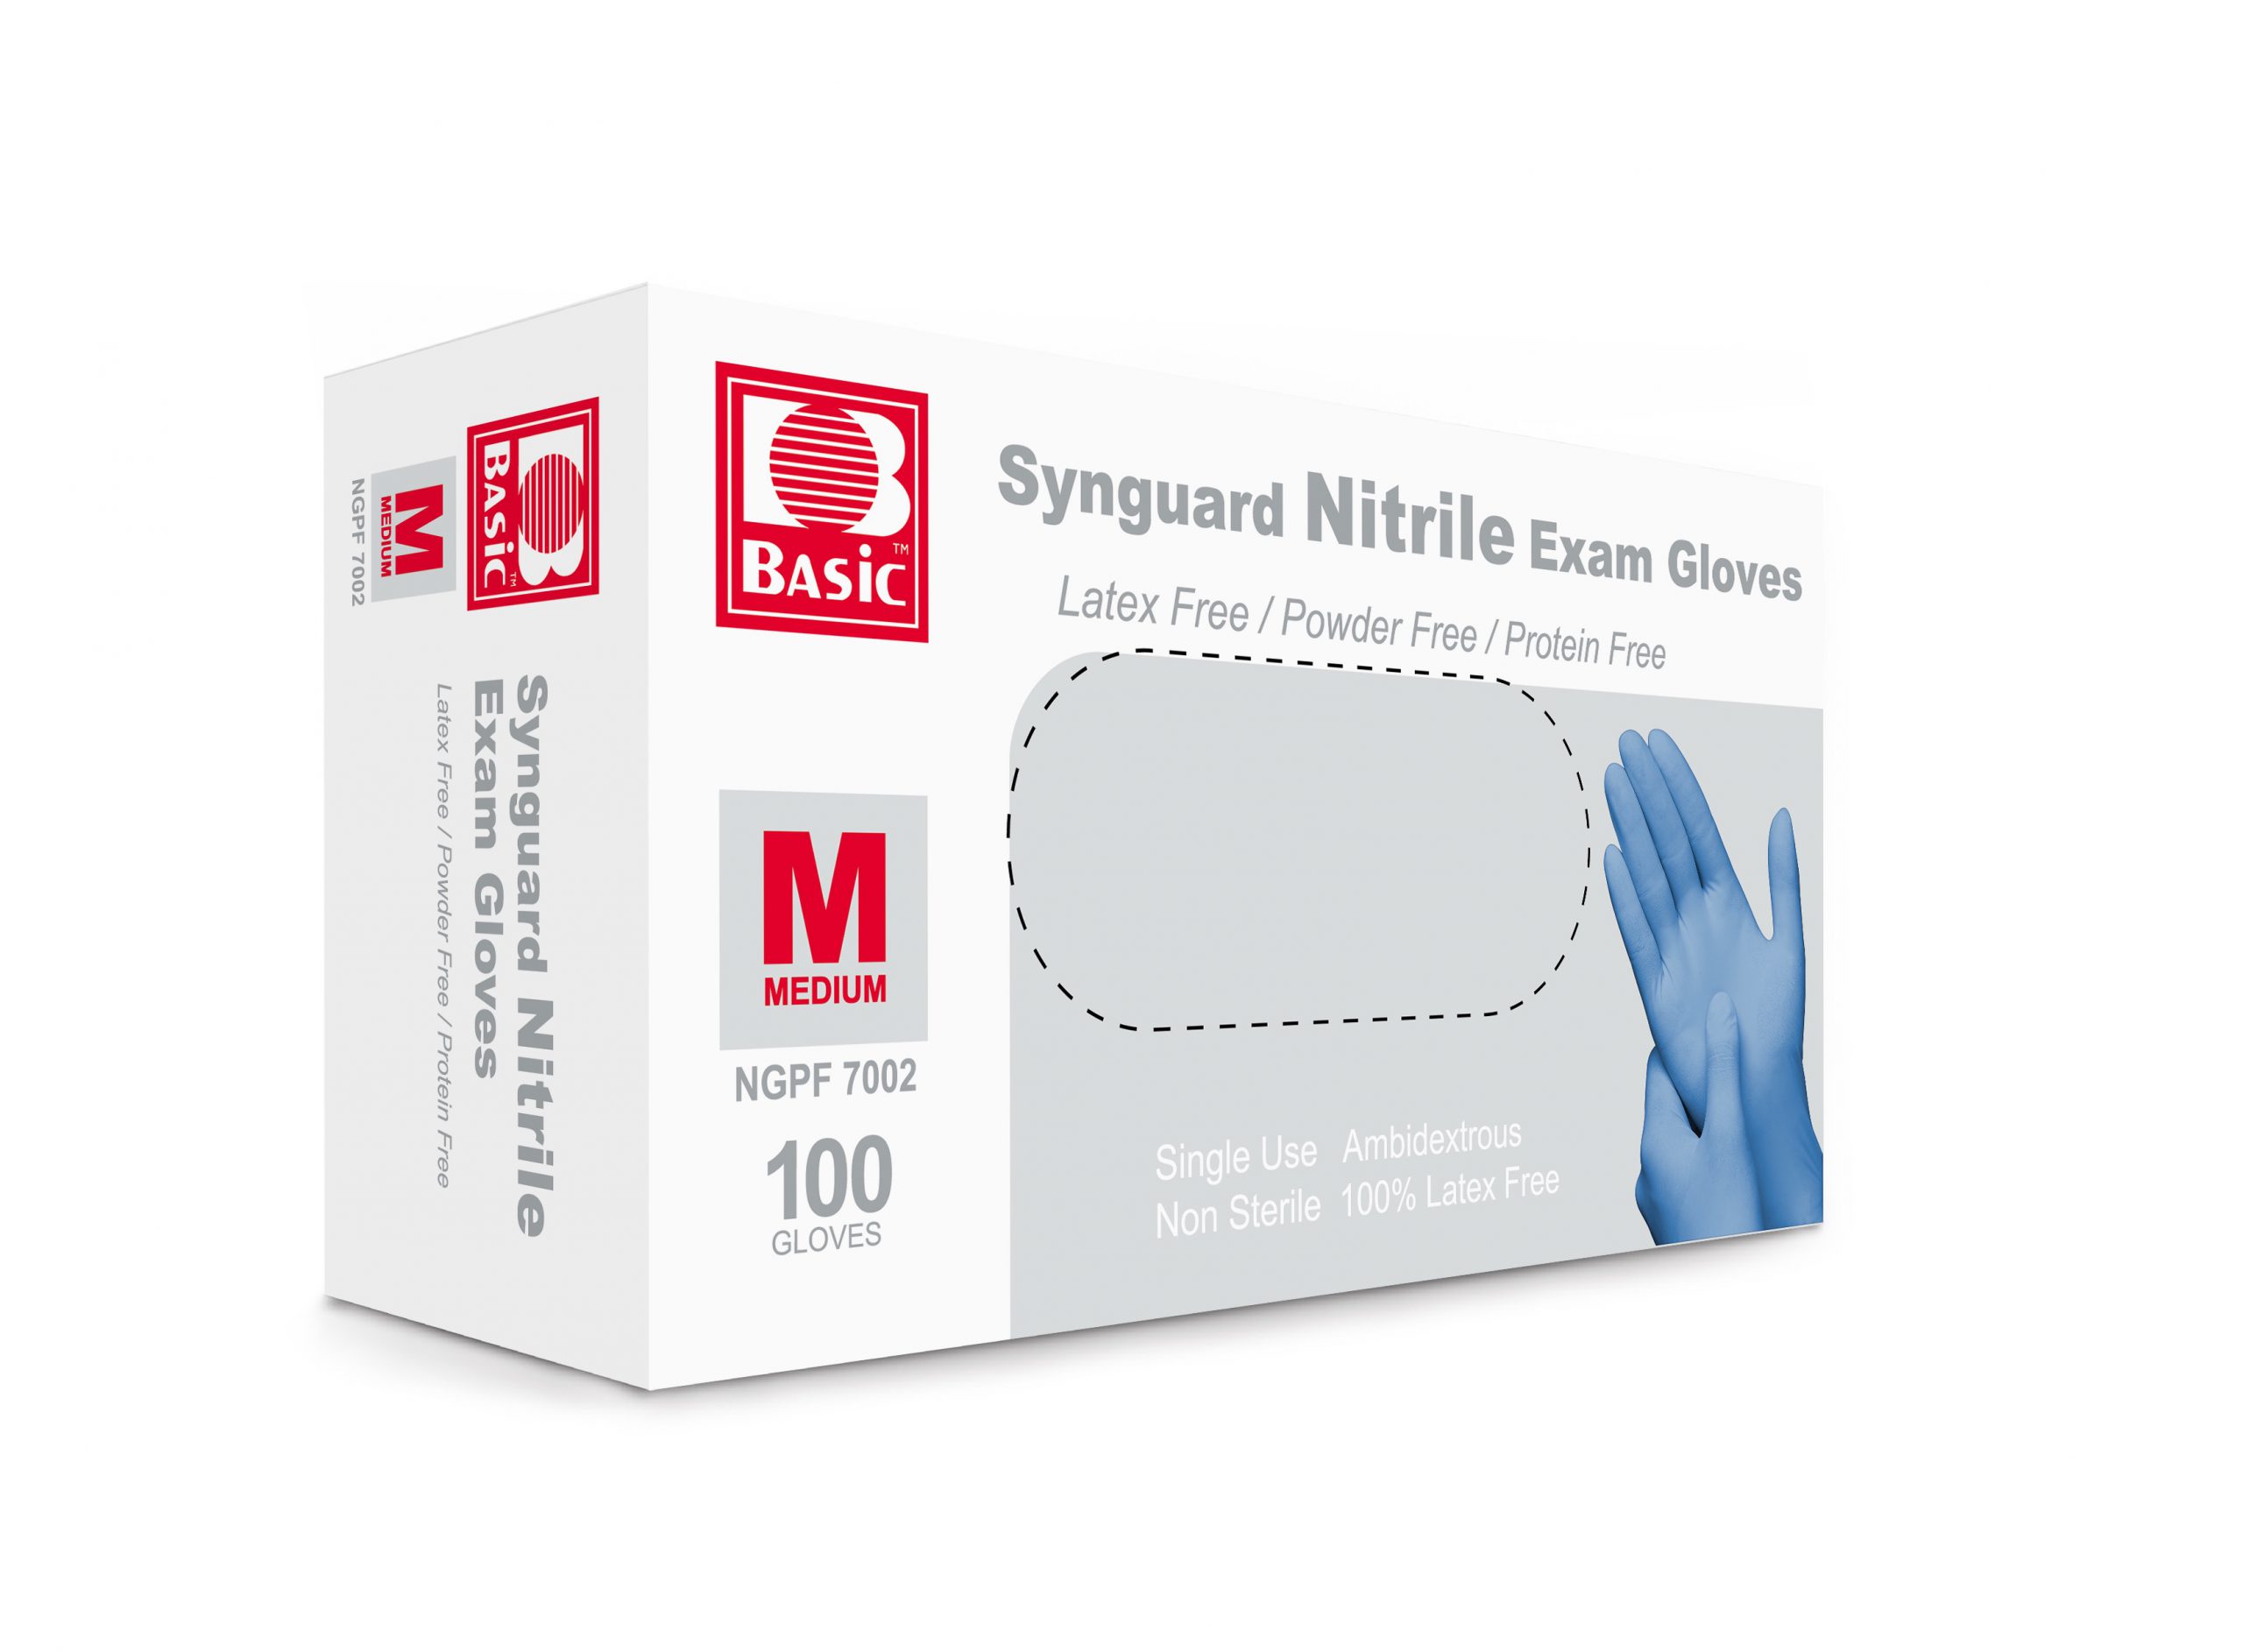 Intco Synguard Nitrile Exam Gloves 3 mil (Free Sample) - Seelingo.in ...